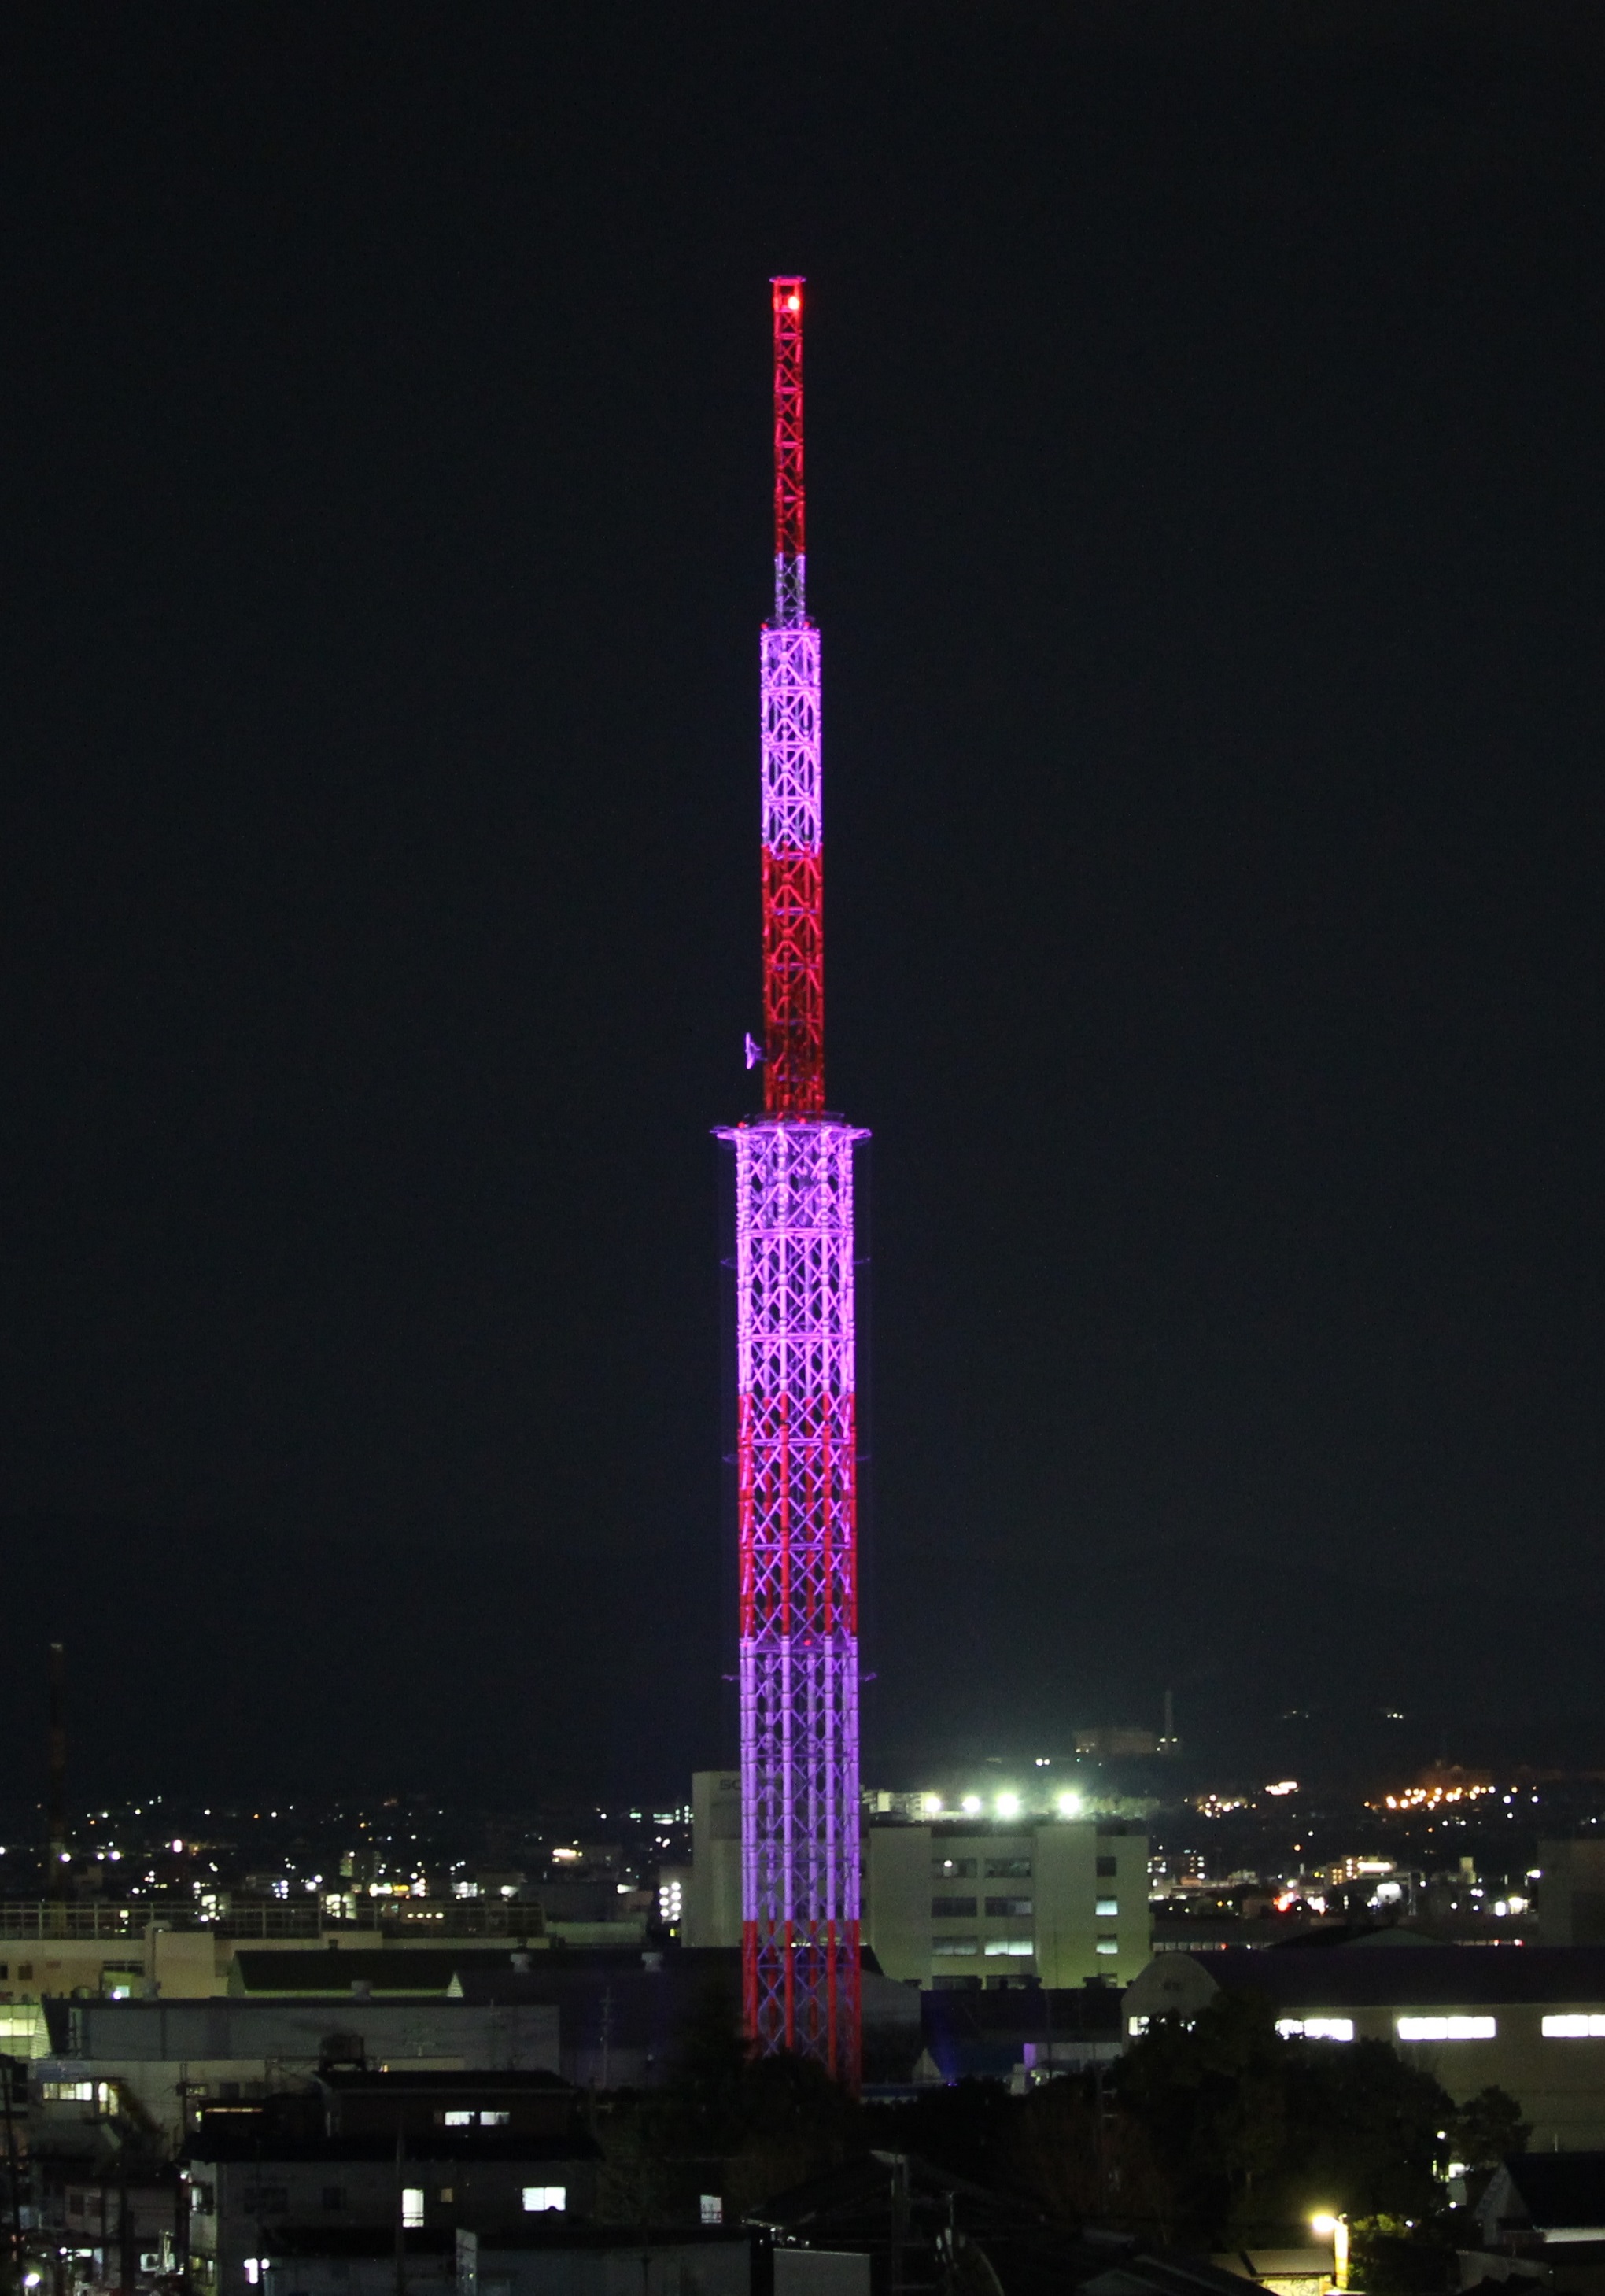 「くみやま夢タワー137」ライトアップ